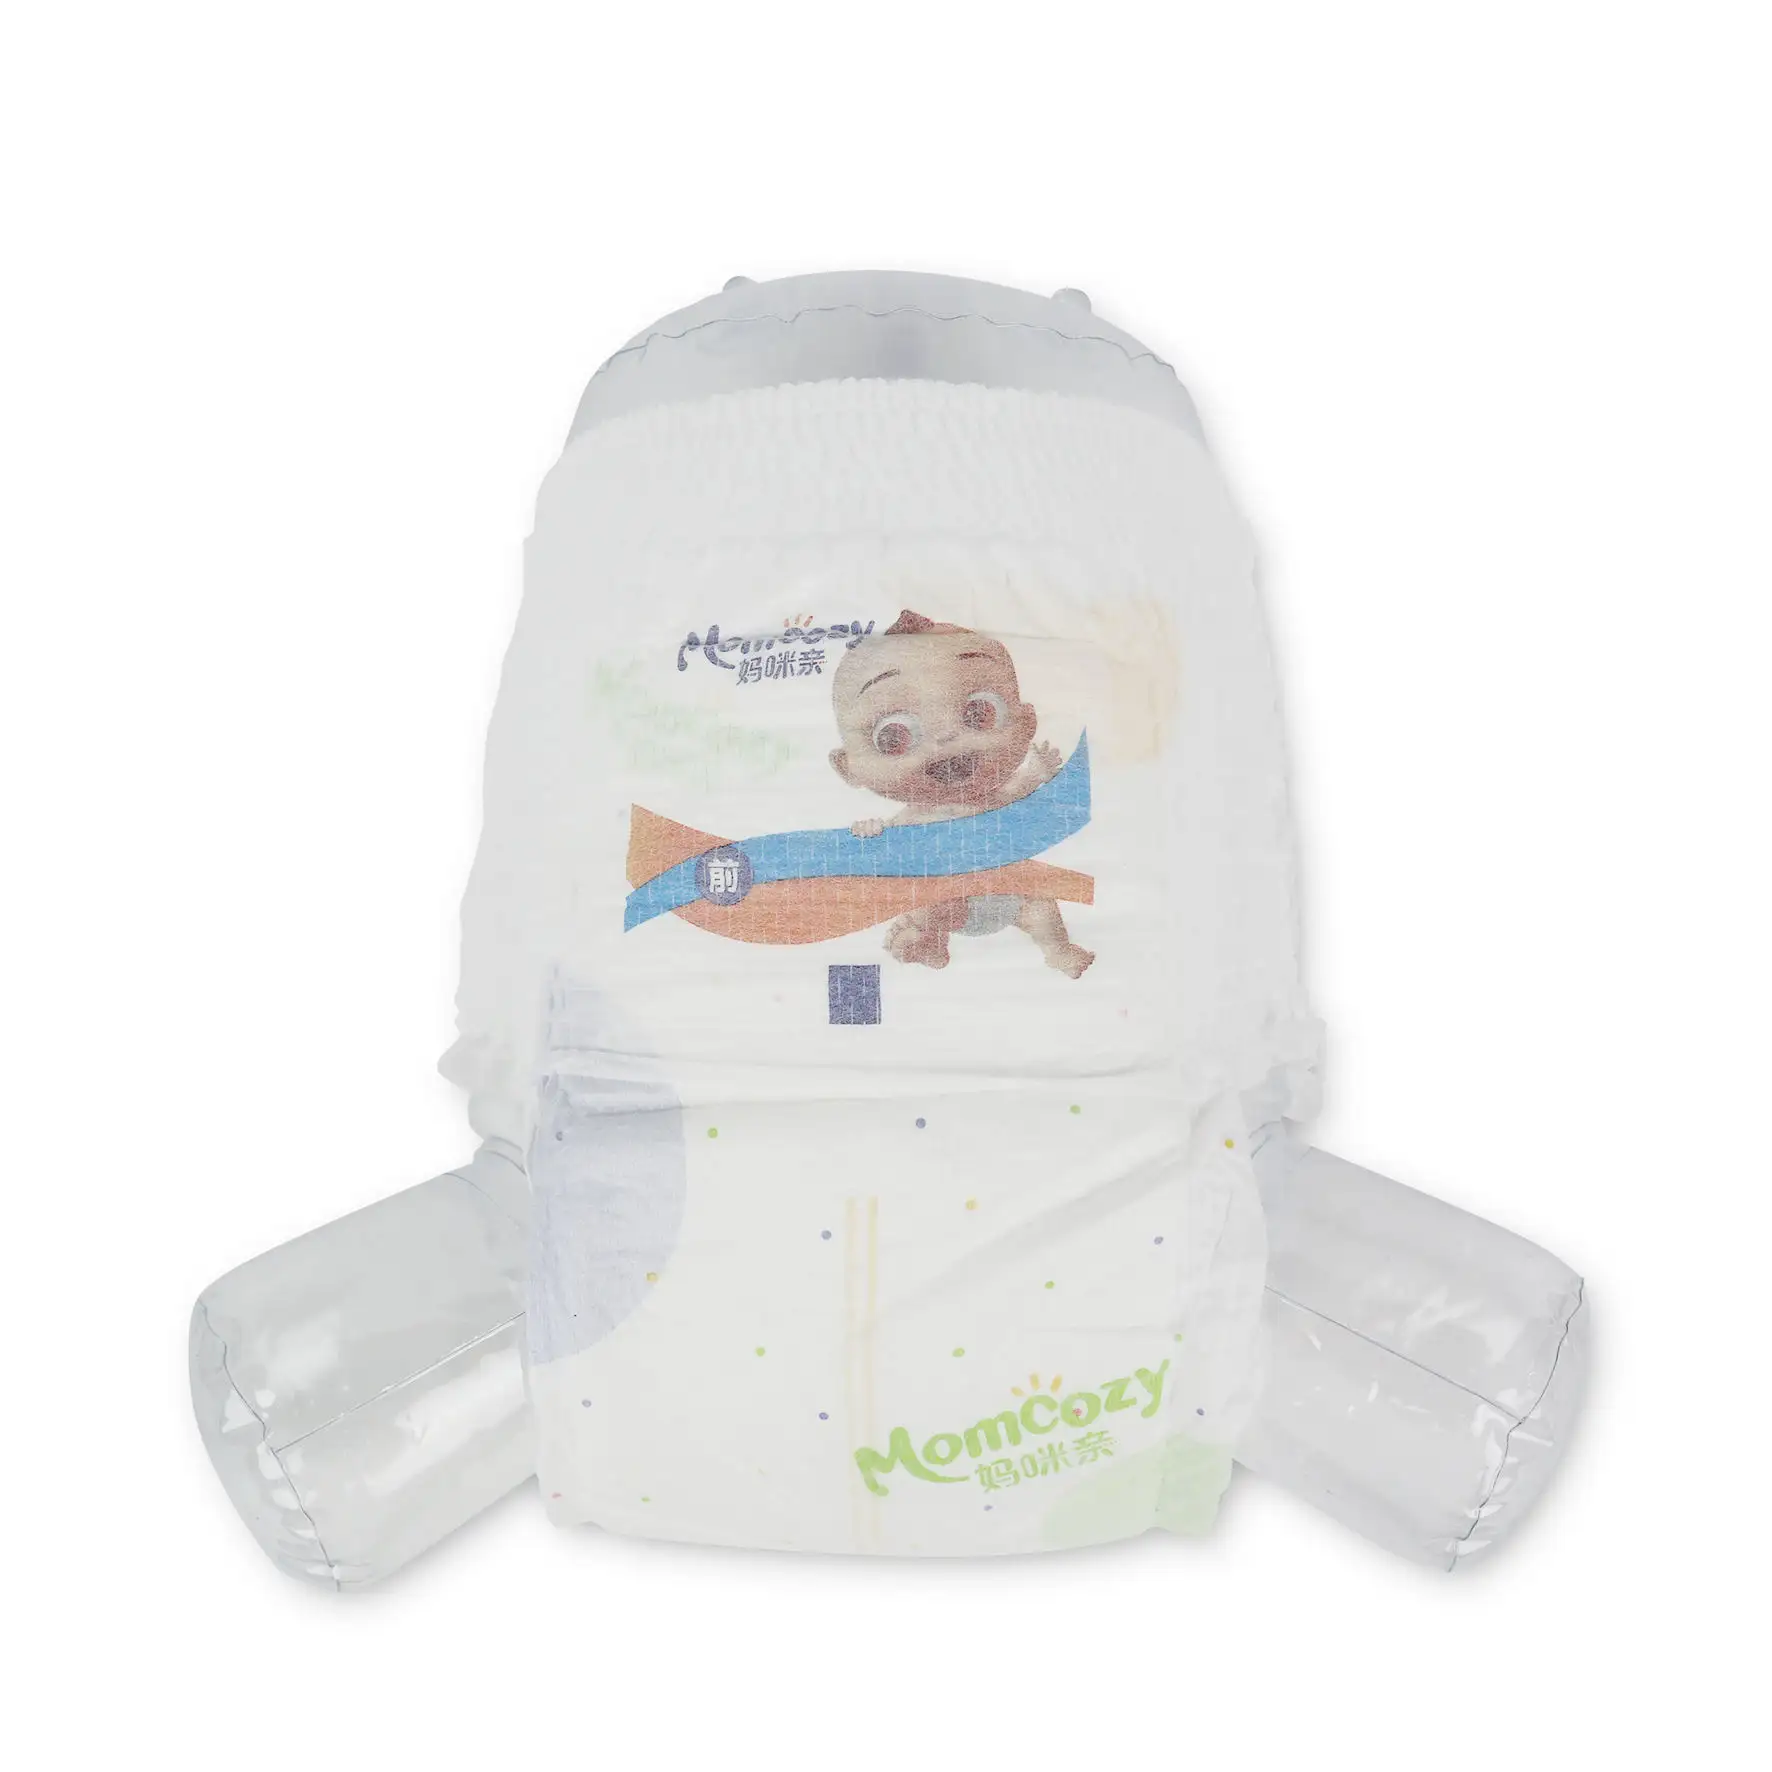 OEM özel Logo rahat bebek bakımı Premium bebek bezi yukarı çekin fabrika özelleştirilmiş olmayan dokuma ürünleri bebek alıştırma külodu